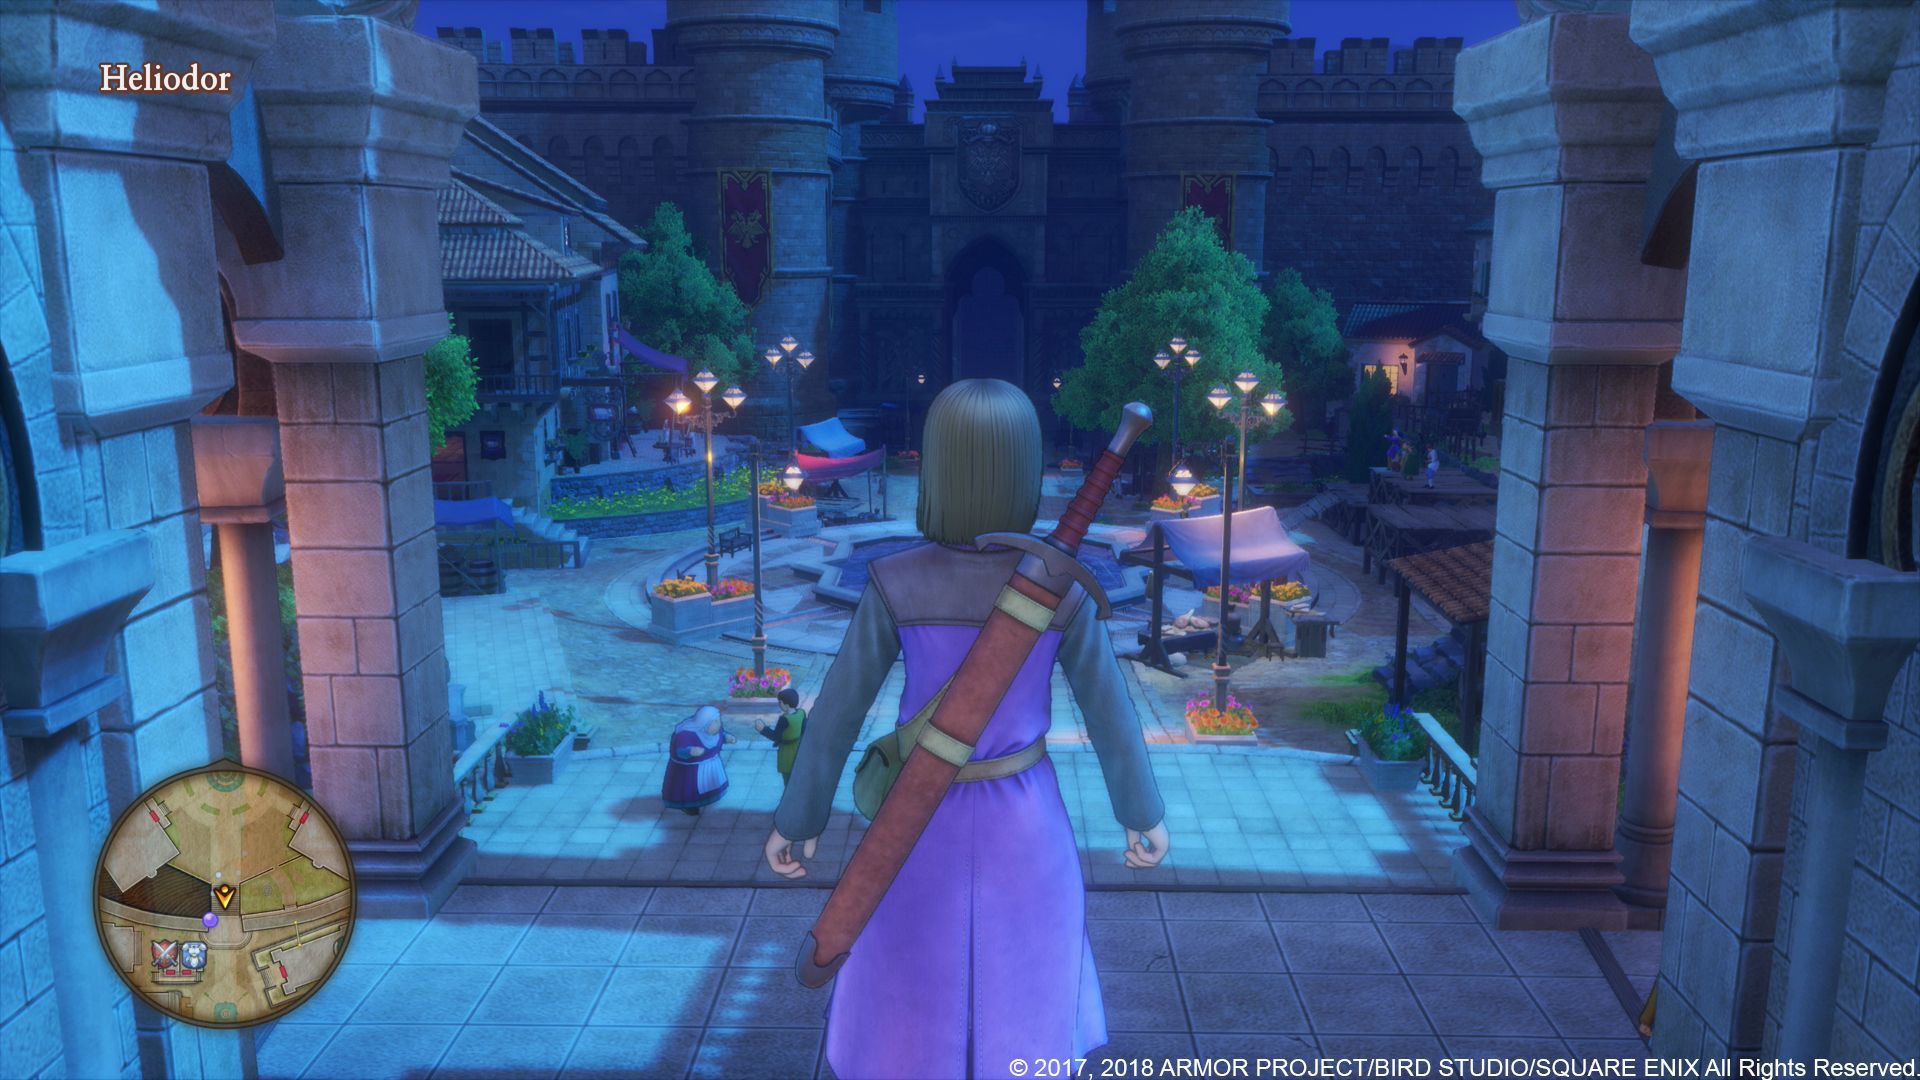 Dragon Quest® Xi Les Combattants De La Destinée™ Édition De La Lumière Ps4 Square Enix